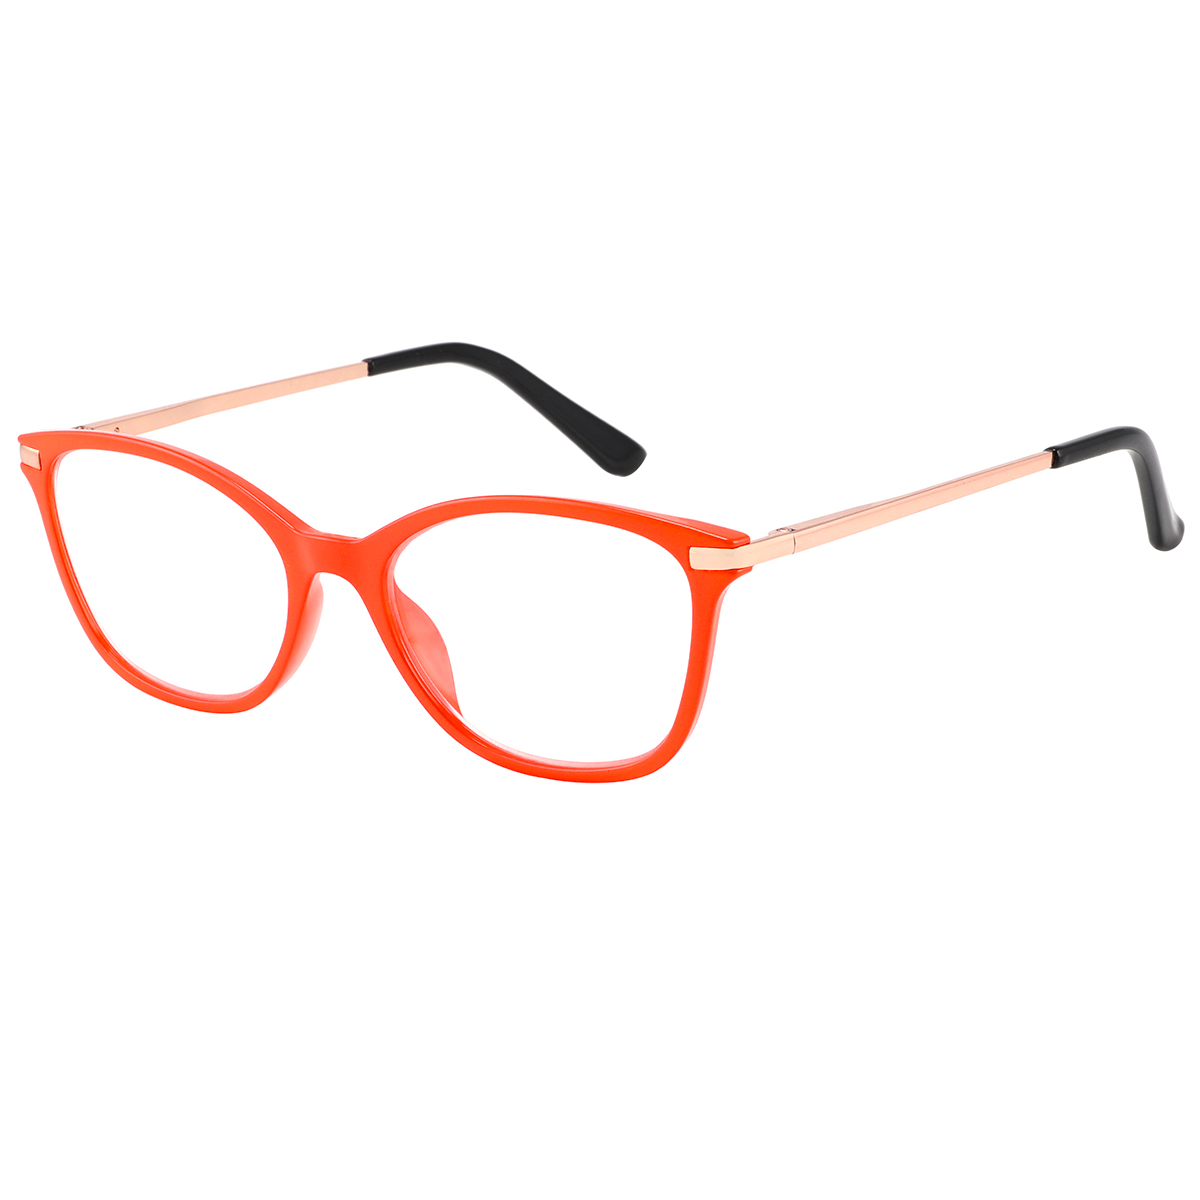 Bengal - Cat-eye Orange Reading Glasses for Women